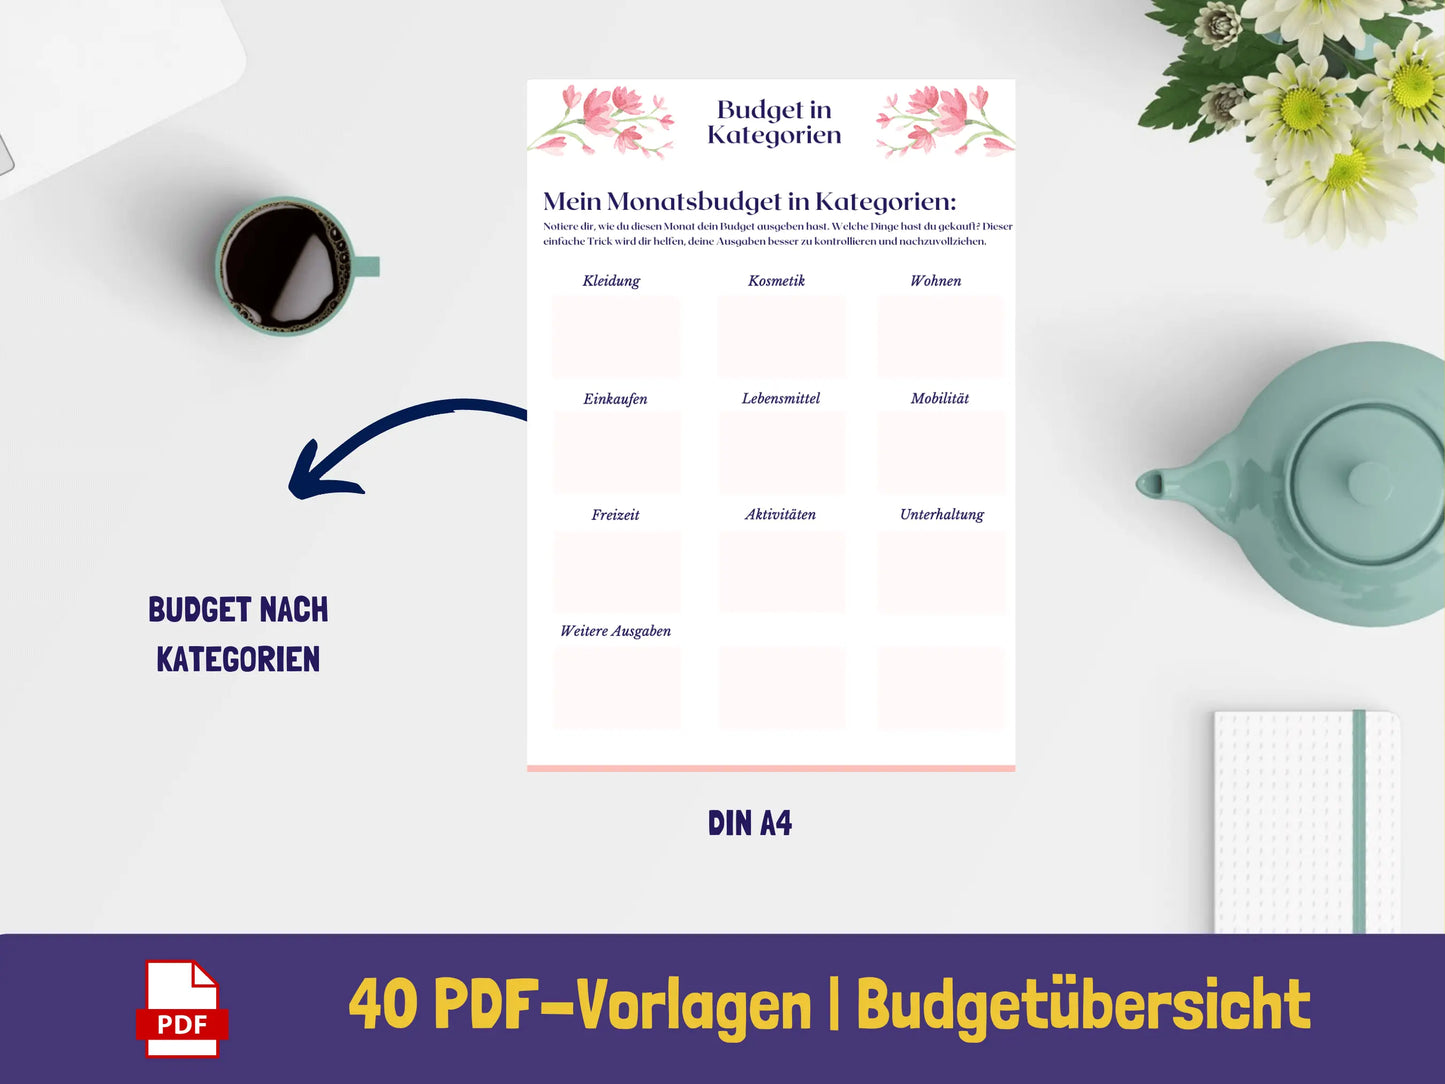 Haushaltsbuch {40 Seiten} PDF AndreasJansen Vorlage